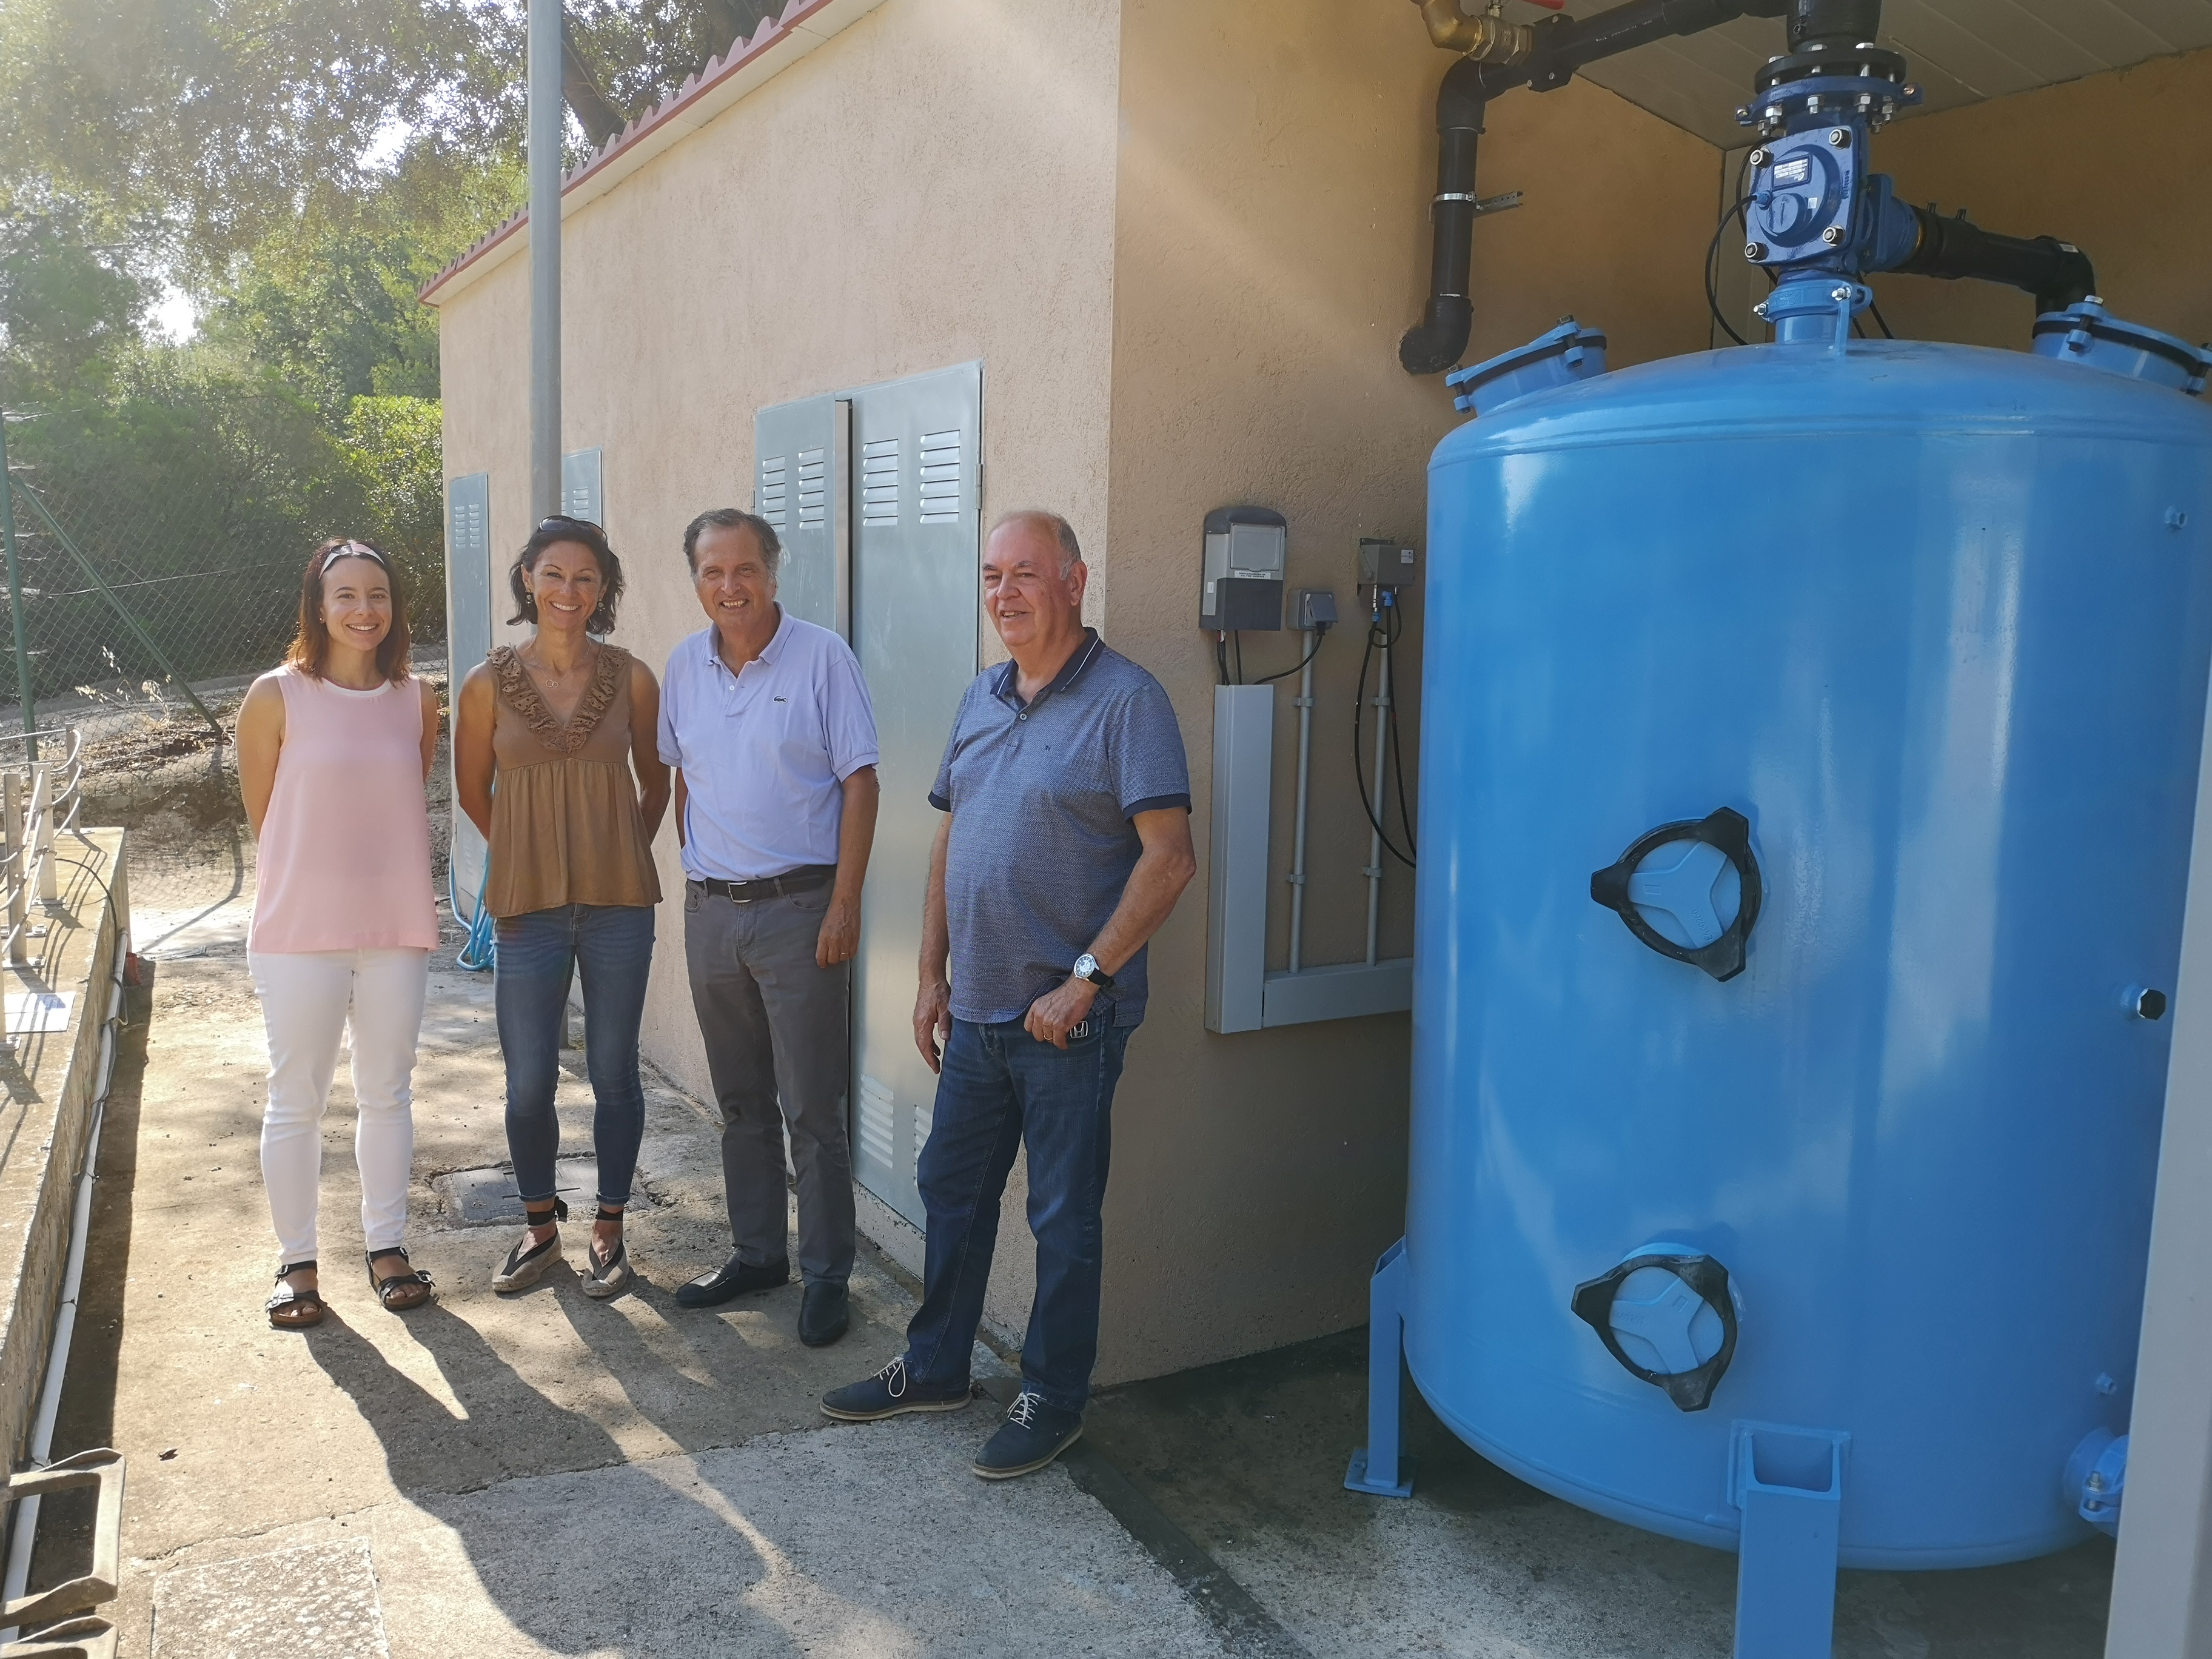 L’Ajuntament de Vandellòs i l'Hospitalet de l'Infant ha impulsat un tractament terciari a Vandellòs per a la reutilització de l’aigua